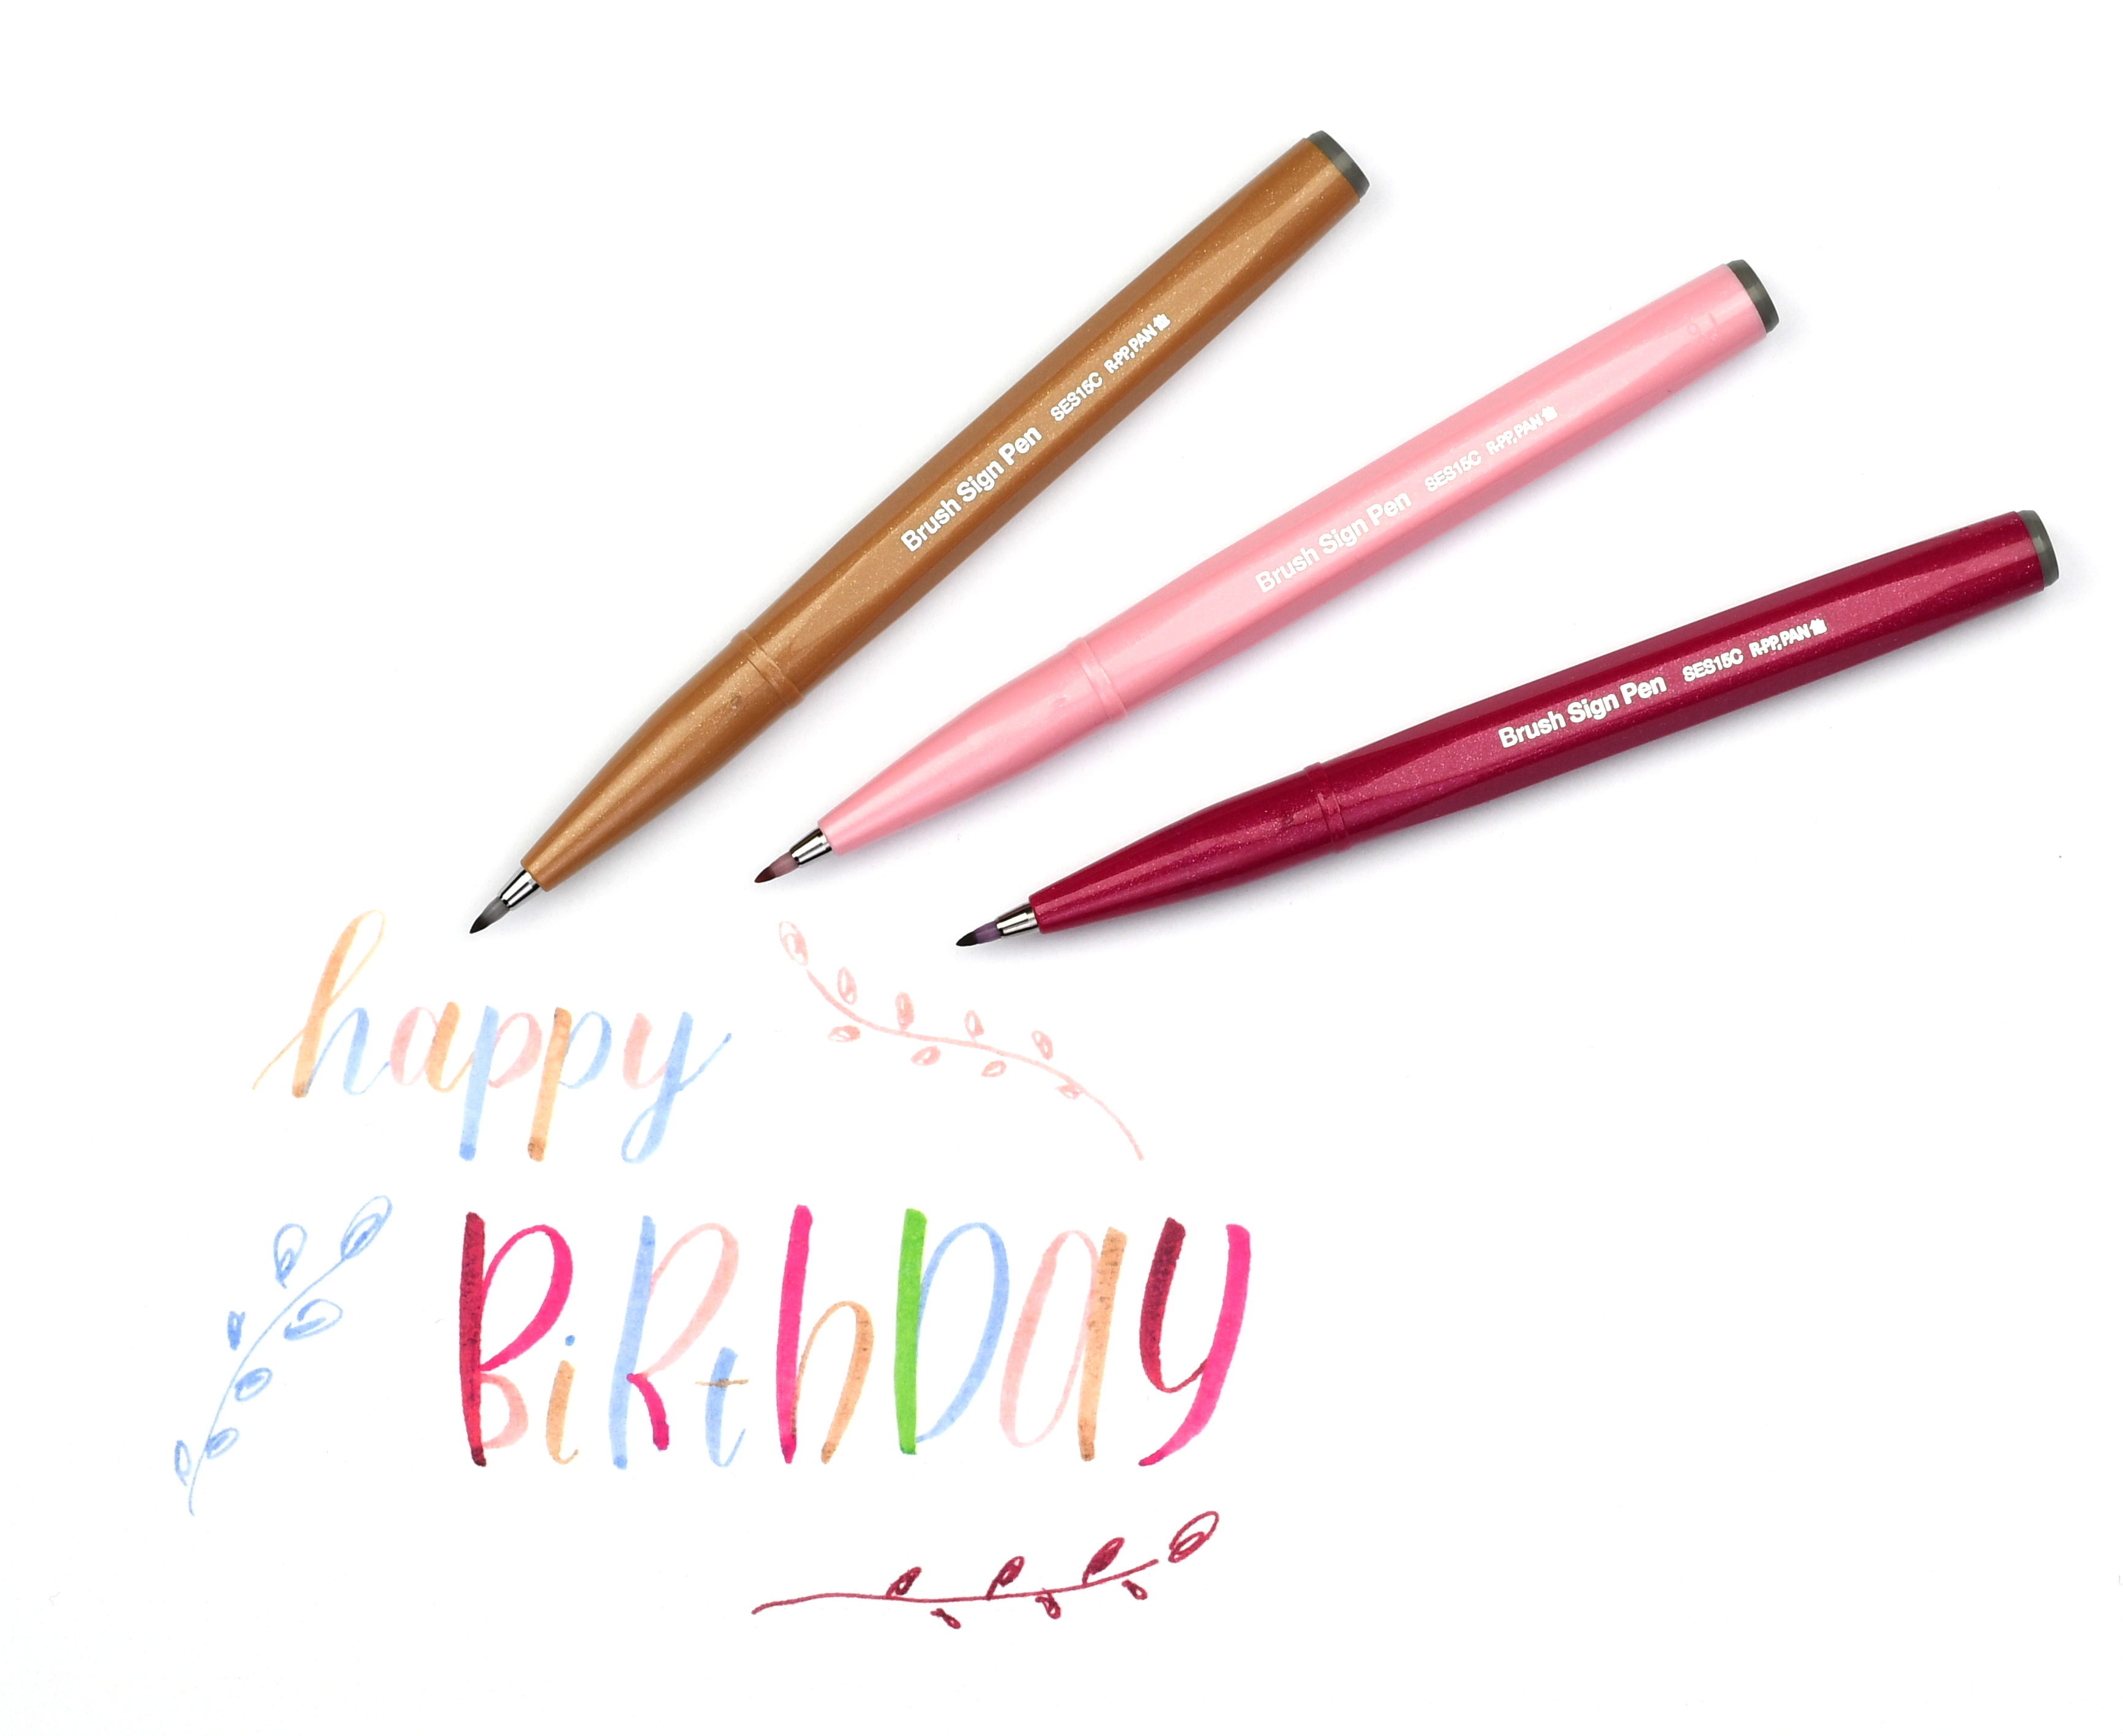 Pinselstift Set Brush Sign Pen